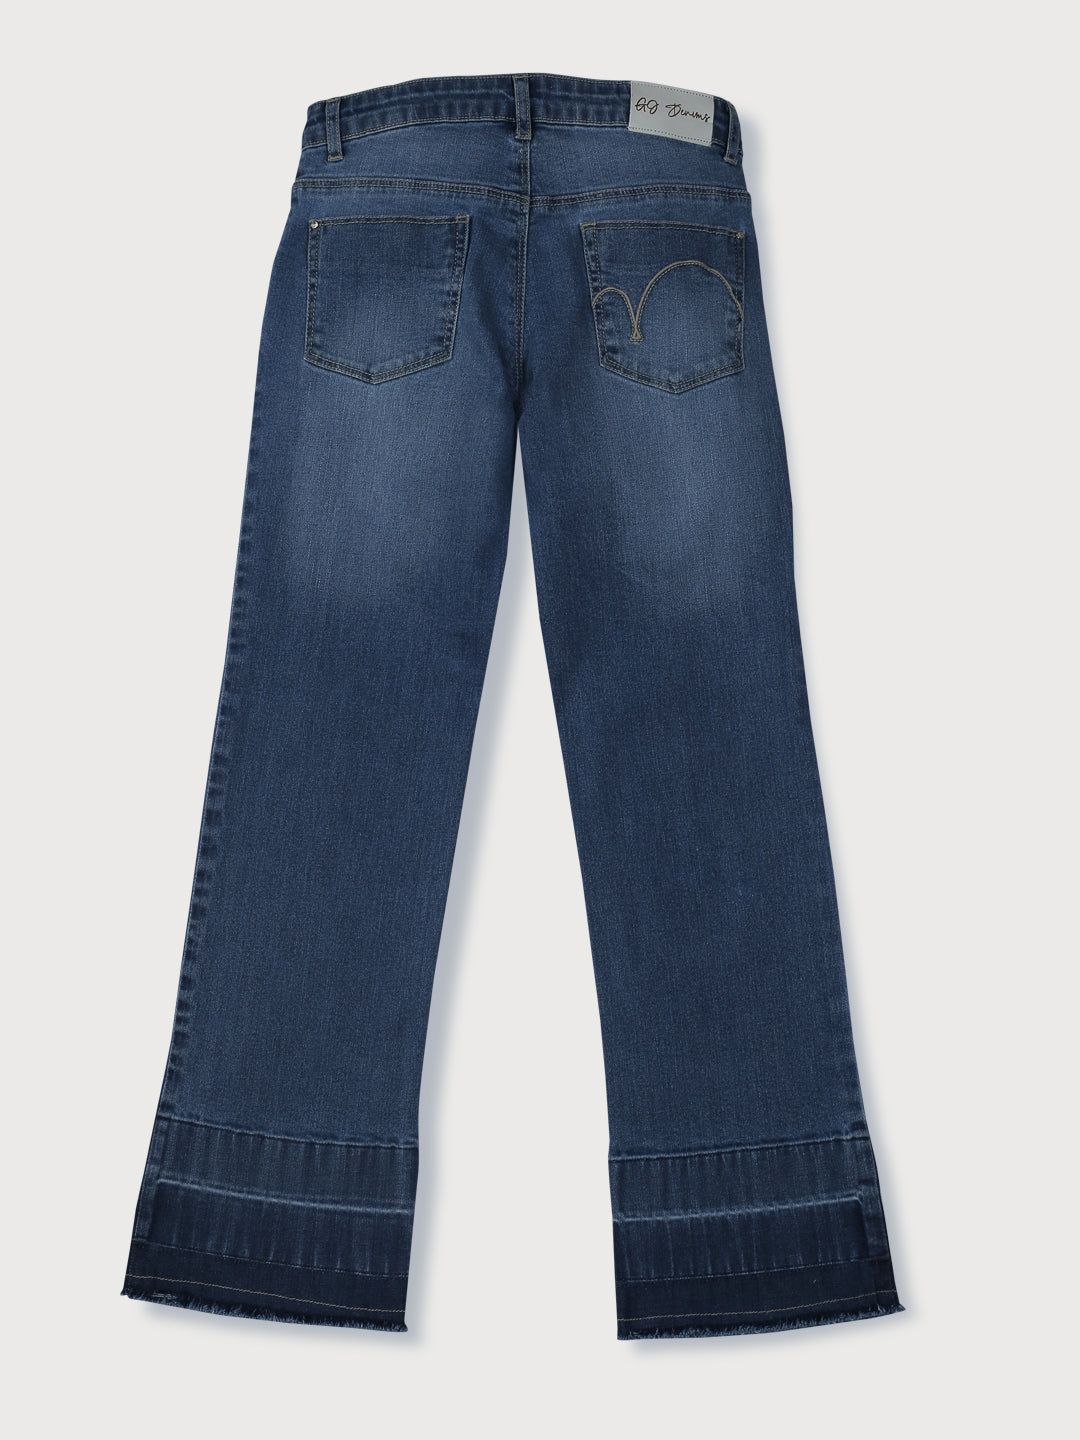 Girls Blue Washed Denim Jeans